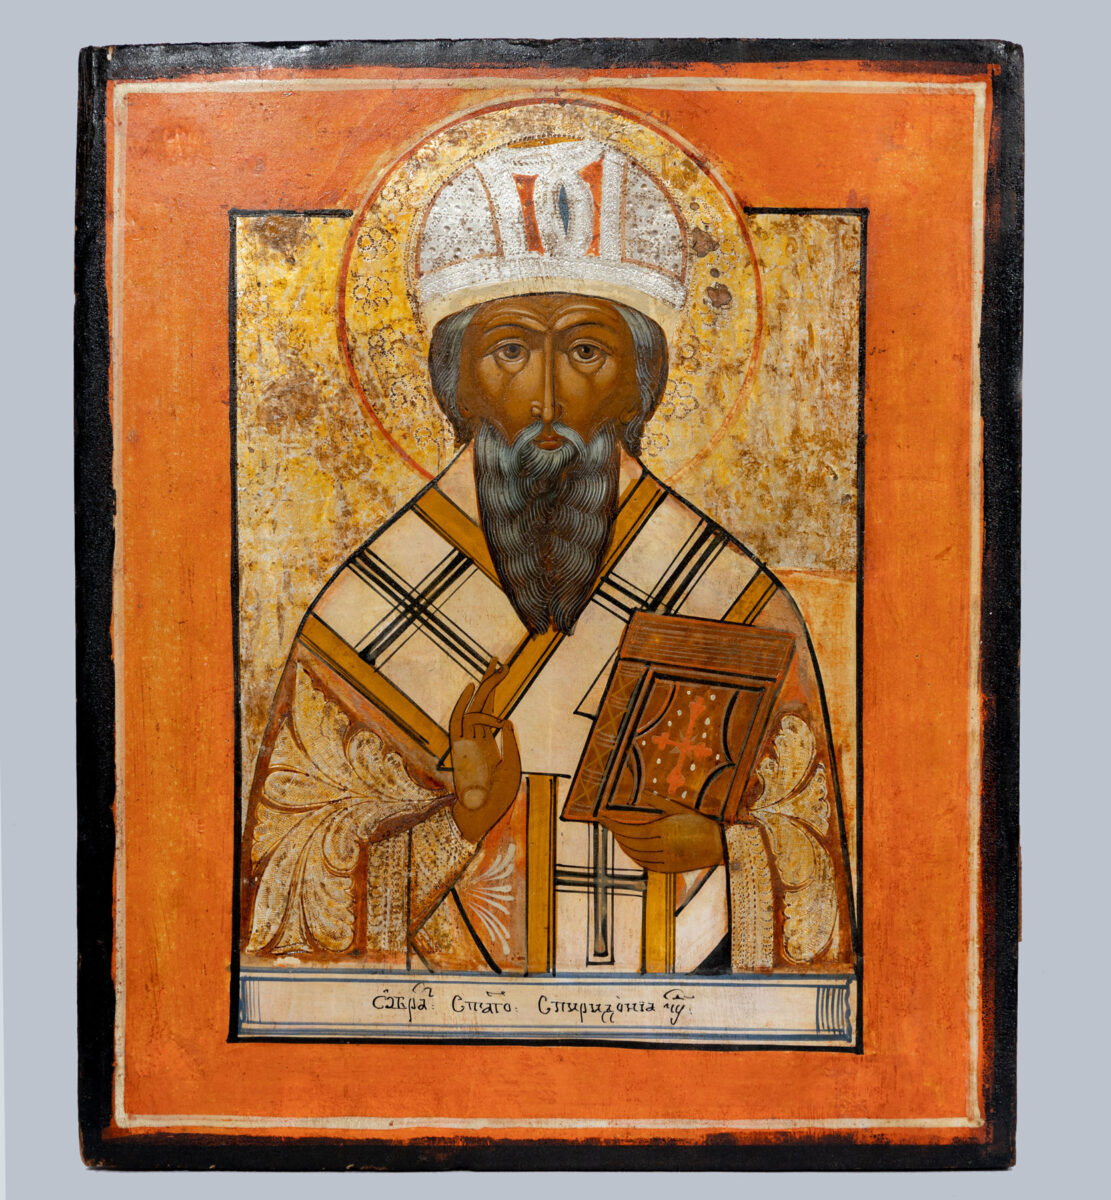 Ο άγιος Σπυρίδων. Κεντρική Ρωσία, 19ος αιώνας. Μουσείο Μπενάκη, αρ. 31445. Δωρεά Γεώργιου Θεοτοκά.